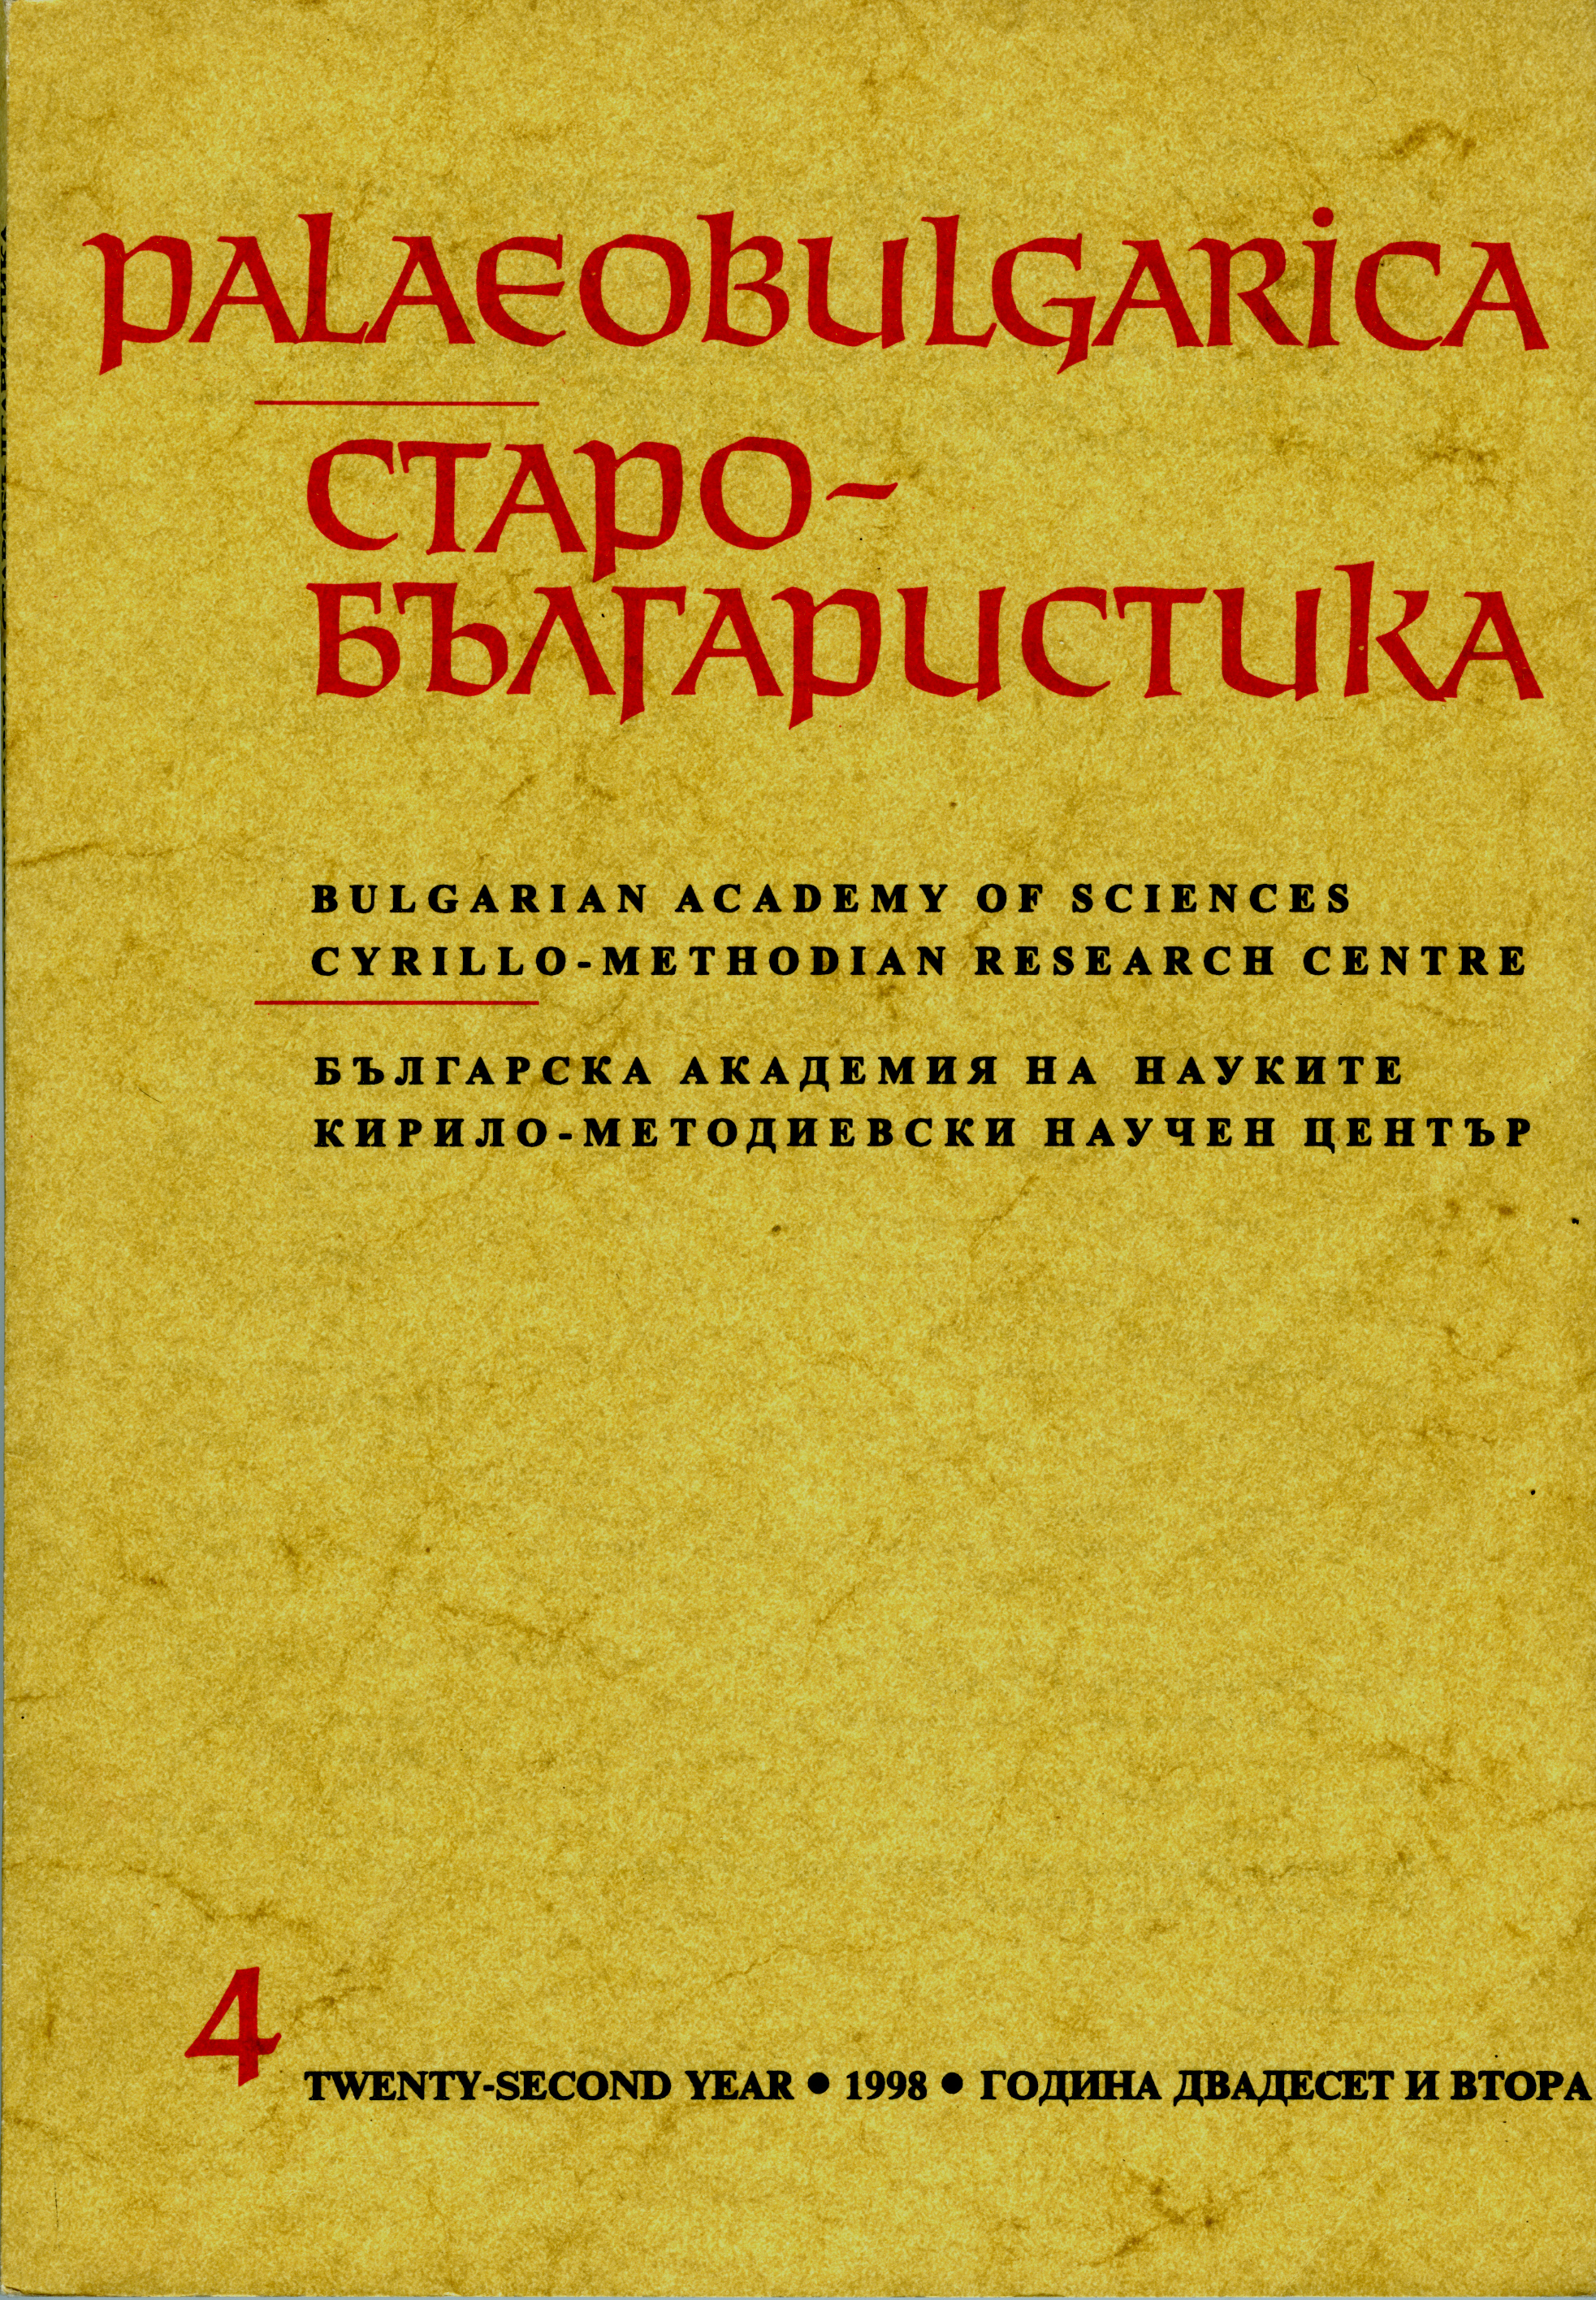 Novo izsledvane varhu vizantujskata i starobalgarskata kultura Cover Image